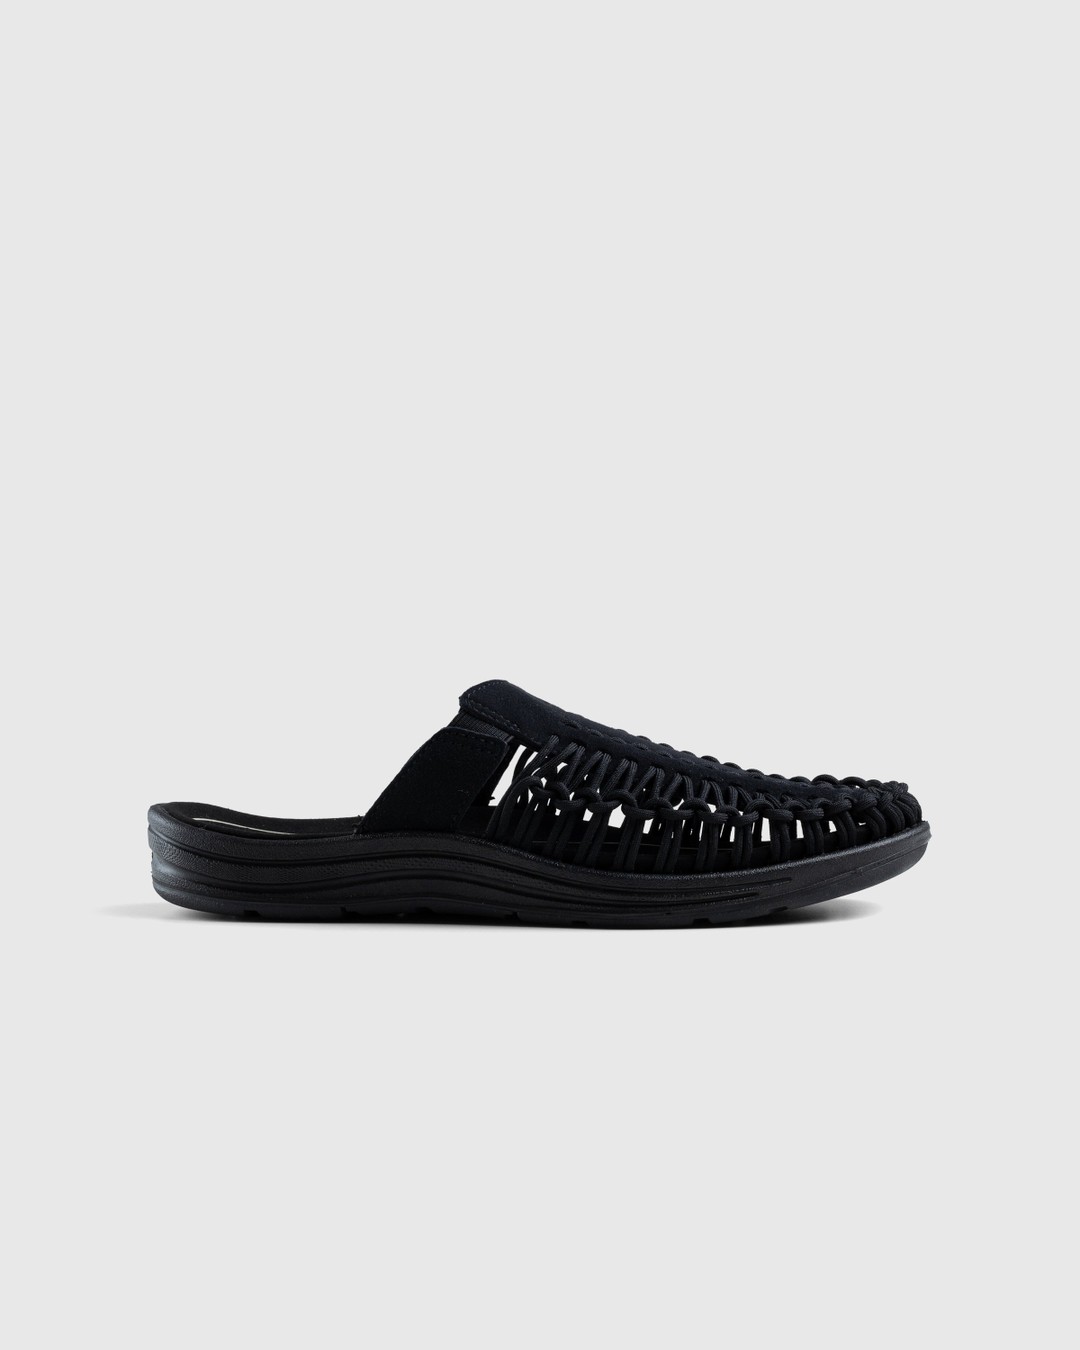 Keen – Uneek II Slide Black - Sandals & Slides - Black - Image 1